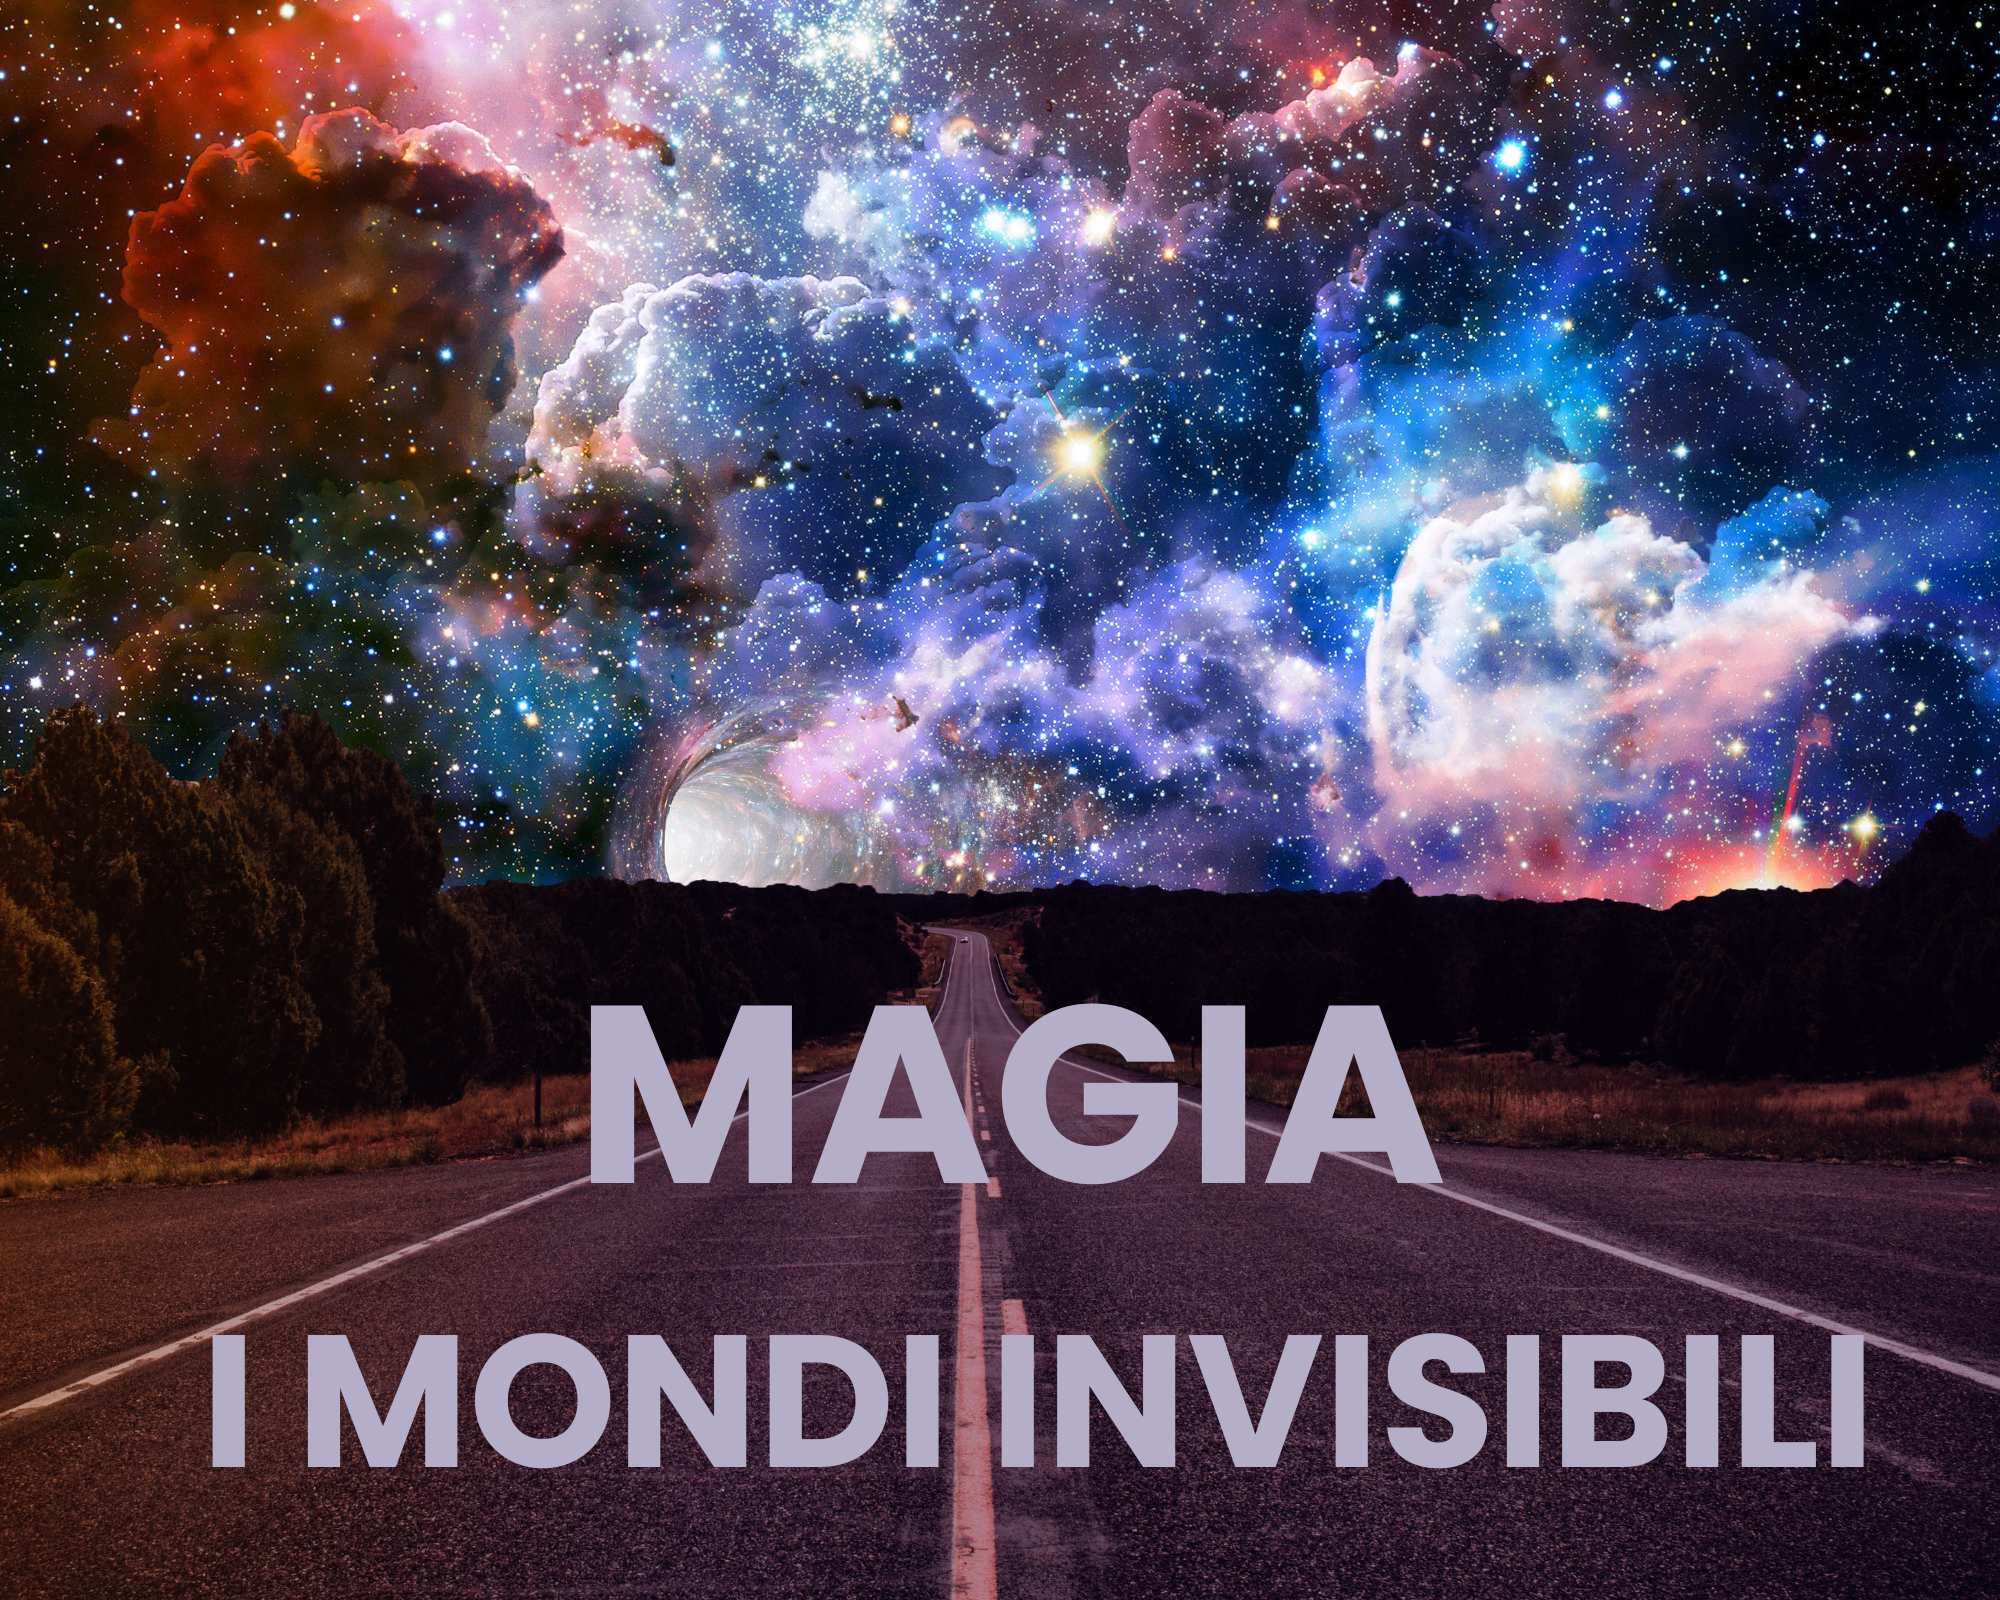 Magia e i mondi invisibili